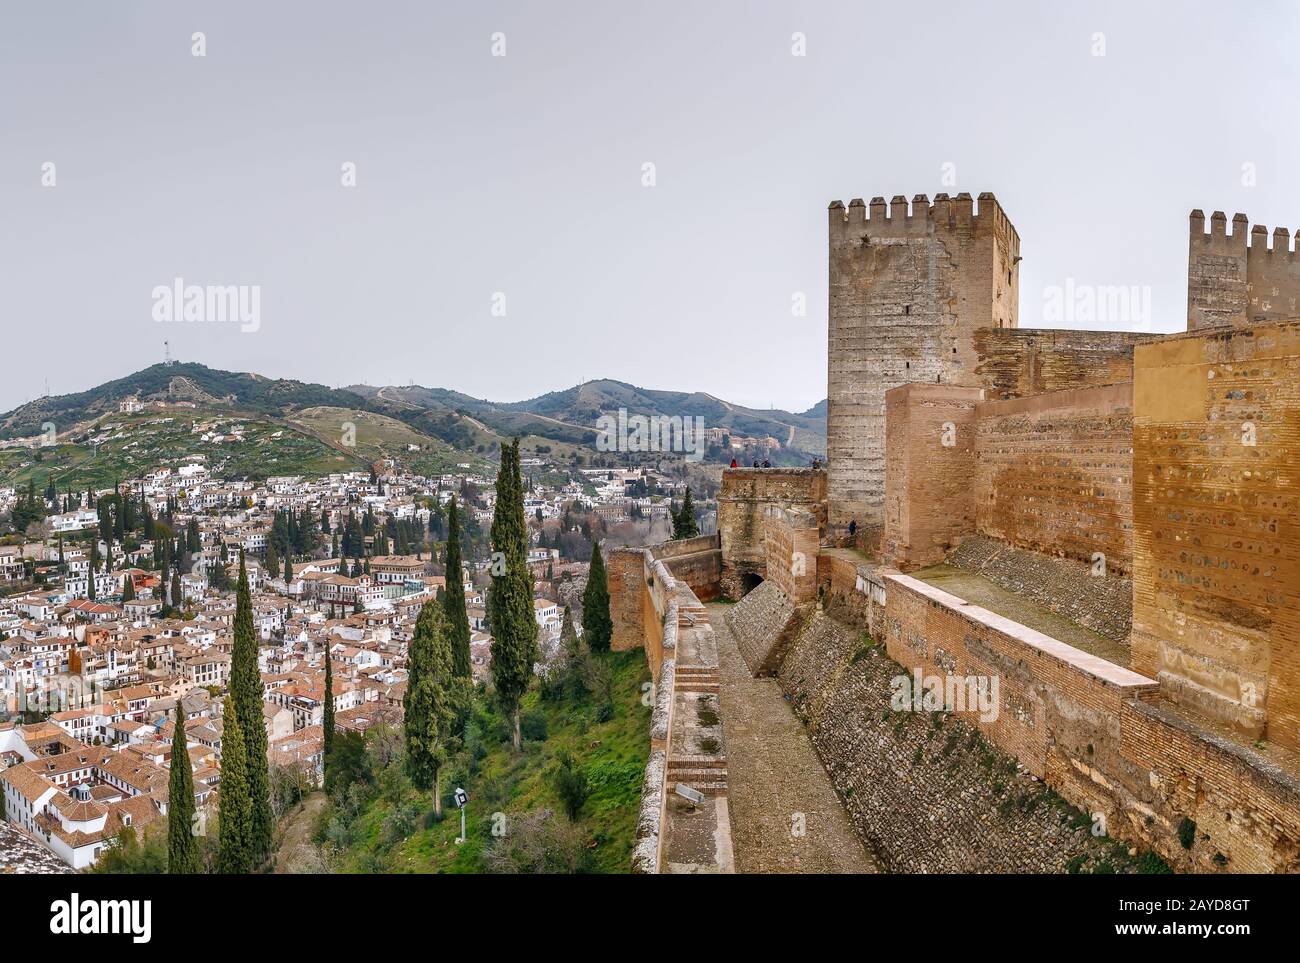 Alcazaba fortress, Granada, Spain Stock Photo